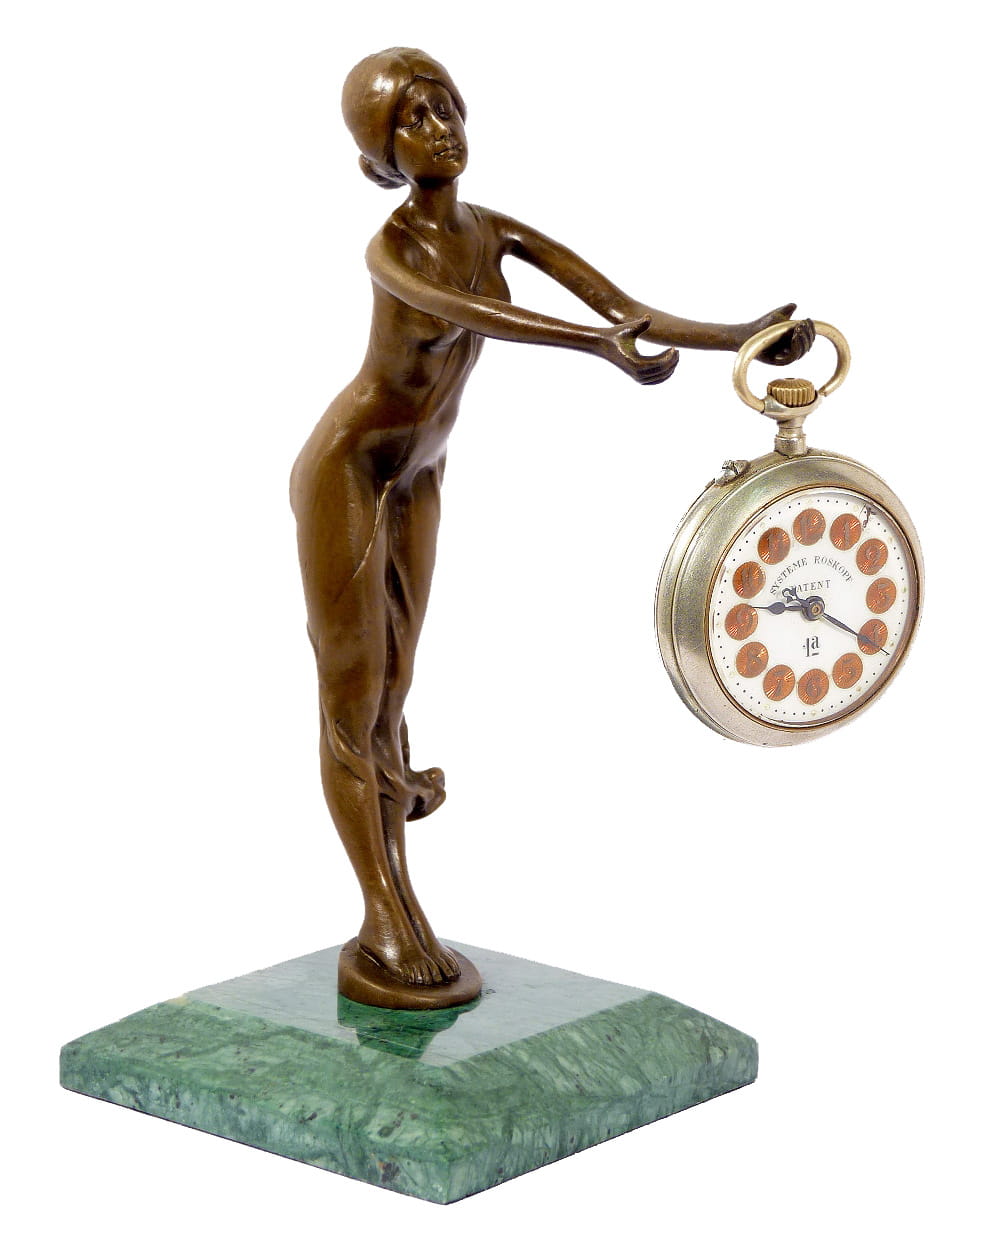 15cm Bronze Frau Figur Skulptur Sport lerin Turnerin Art Deco Stil Jugendstil 